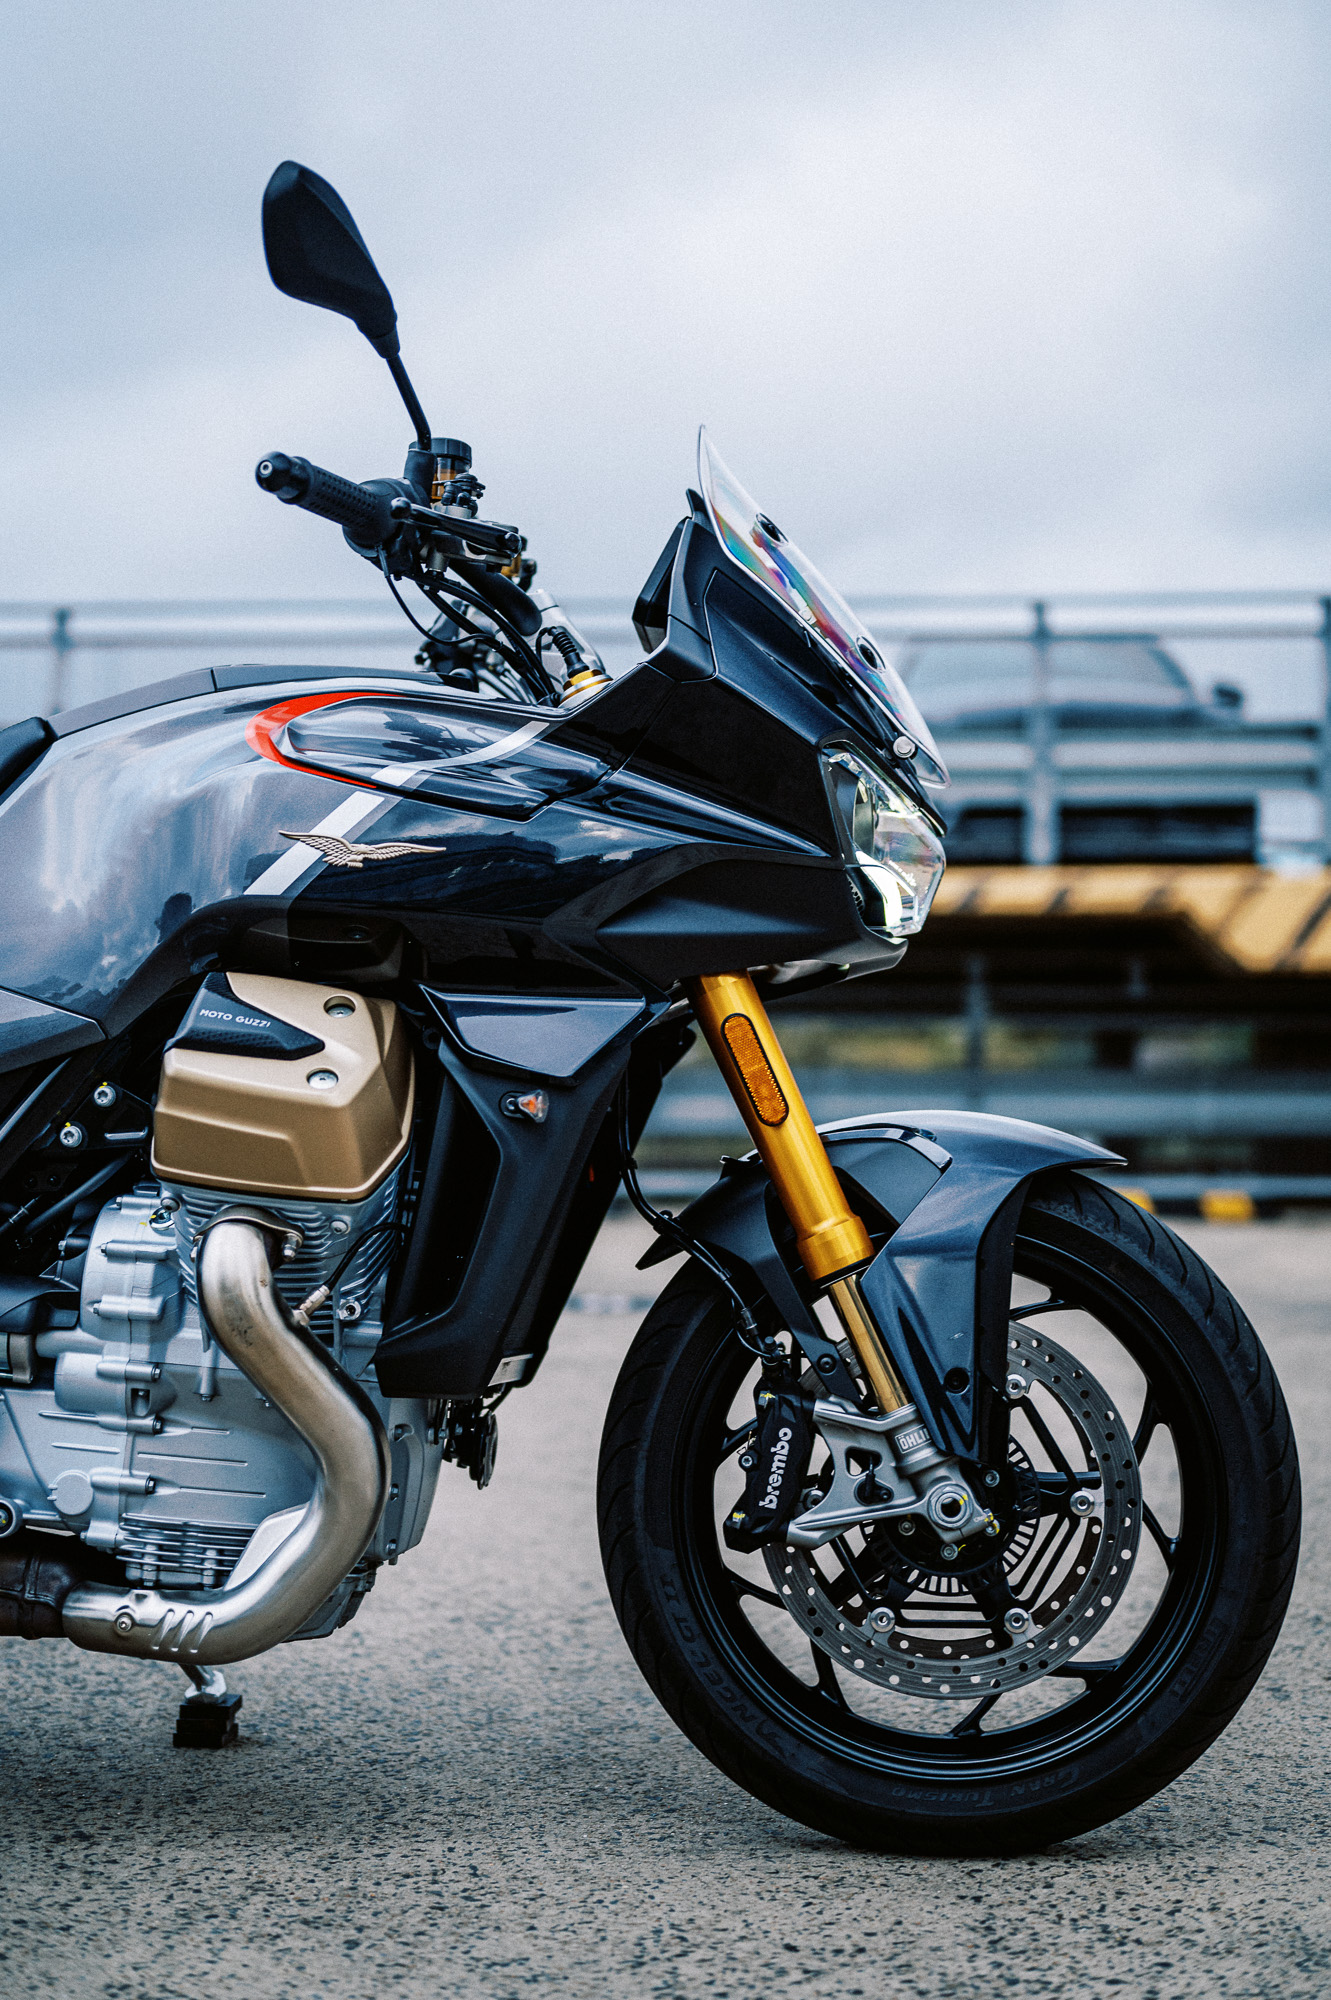 The 2023 Moto Guzzi V100 Mandello S Brings The Past Into The